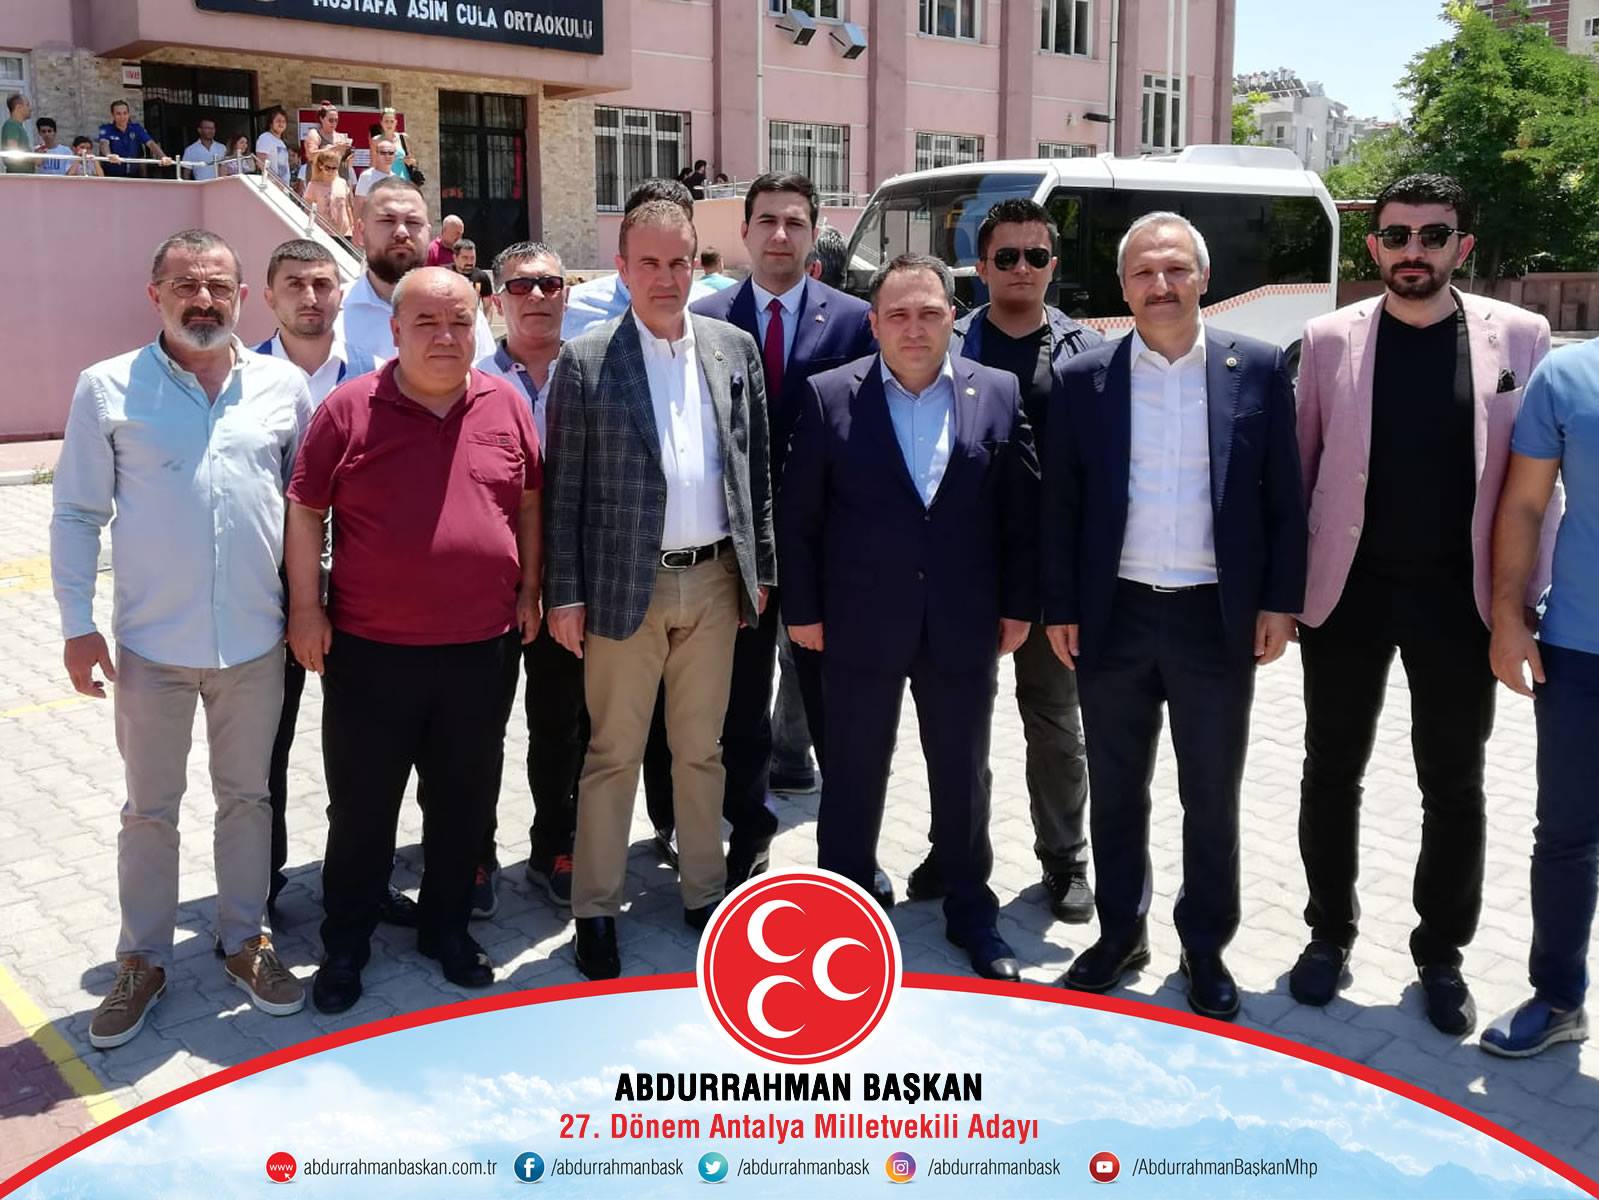 Antalya Milletvekilimiz Ahmet Selim Yurdakul, İl Başkanımız Mustafa Aksoy ve dava arkadaşlarımız ile birlikte Muratpaşa Mustafa Asım Cula Ortaokulu